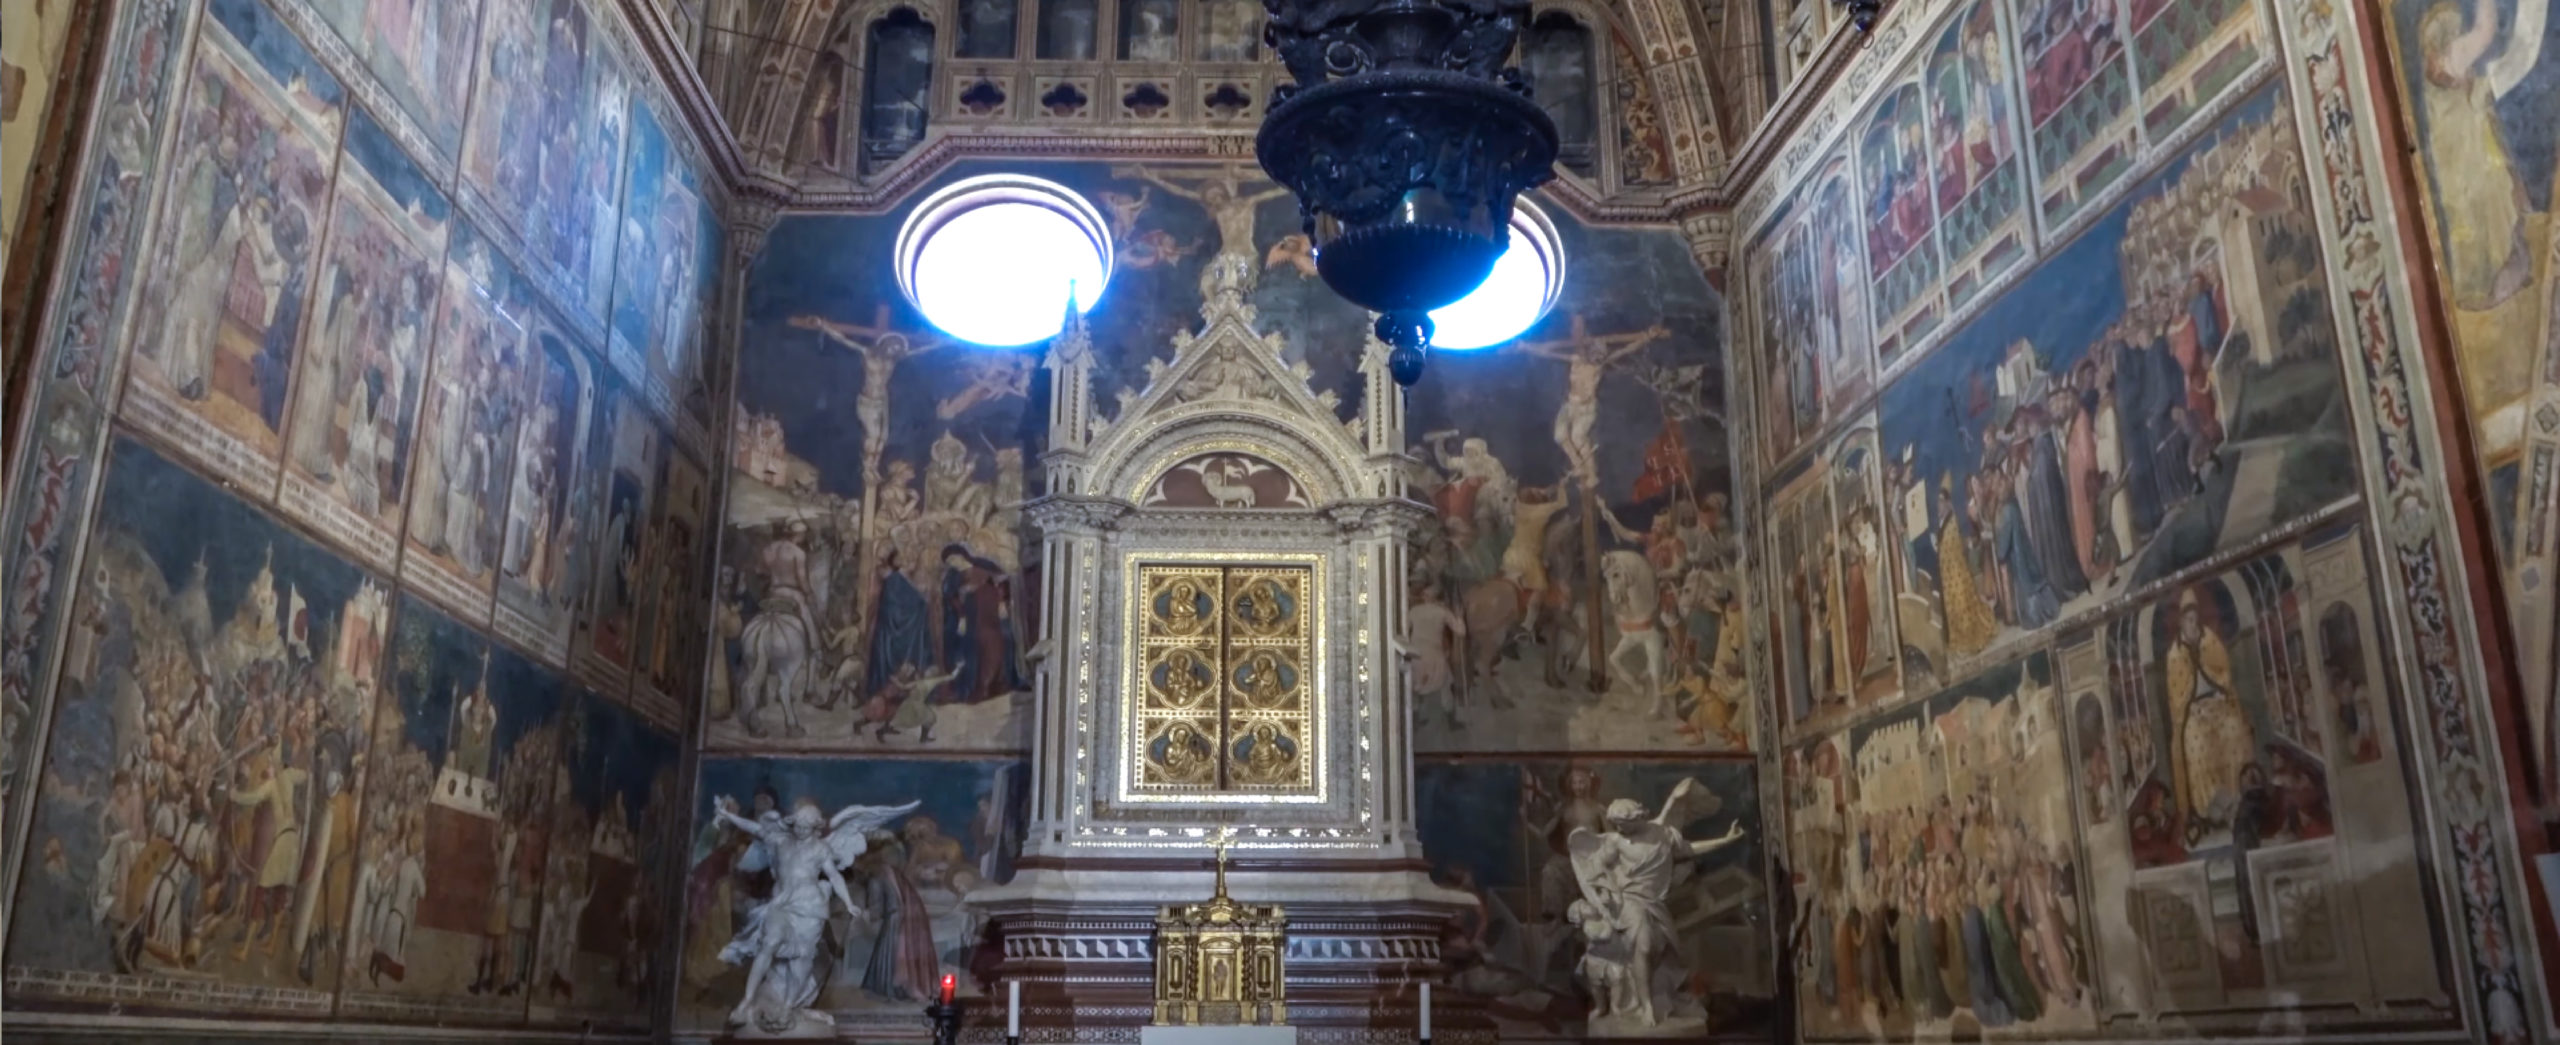 Orvieto - Veduta della cappella del Corporale nel Duomo